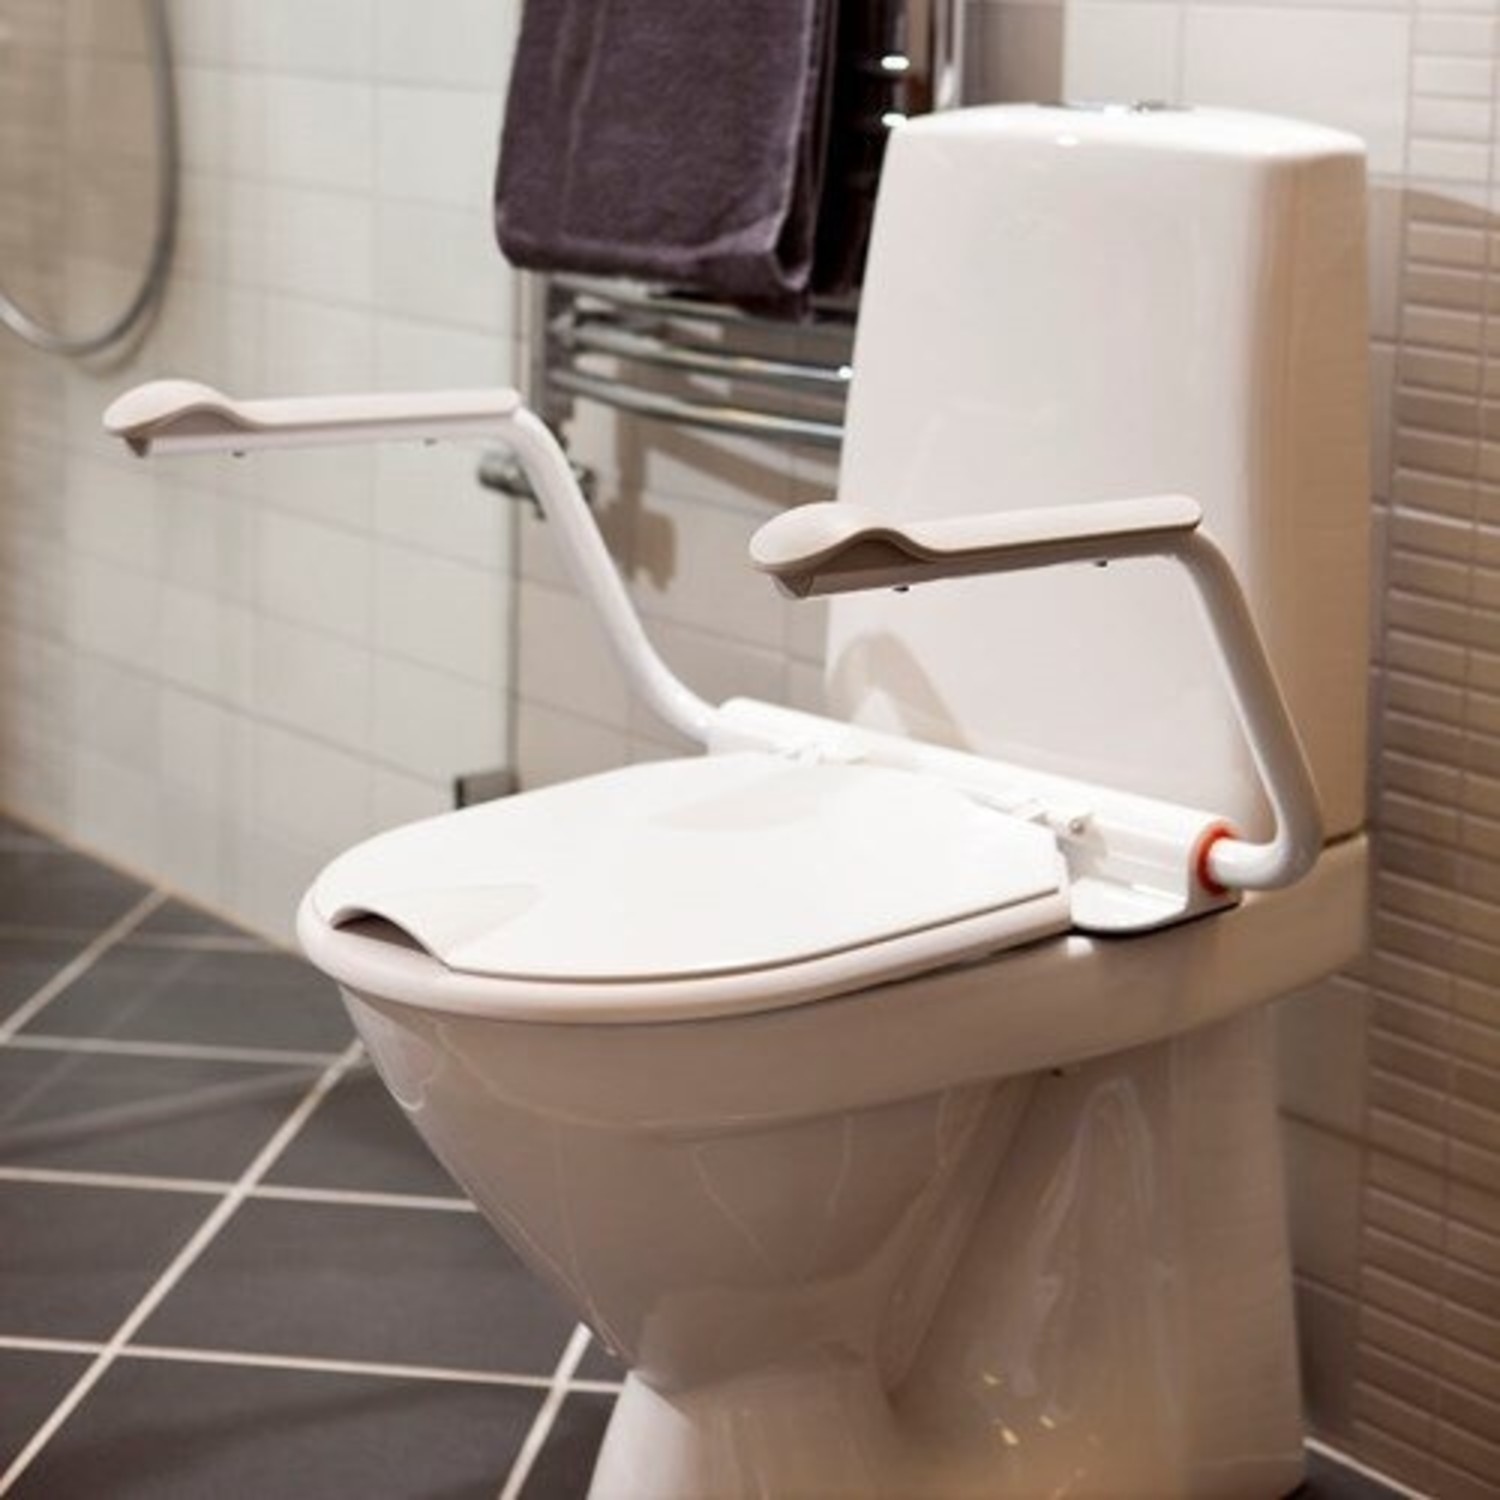 Système D'entraînement Aux Toilettes Pour Chat, Siège D'urinoir